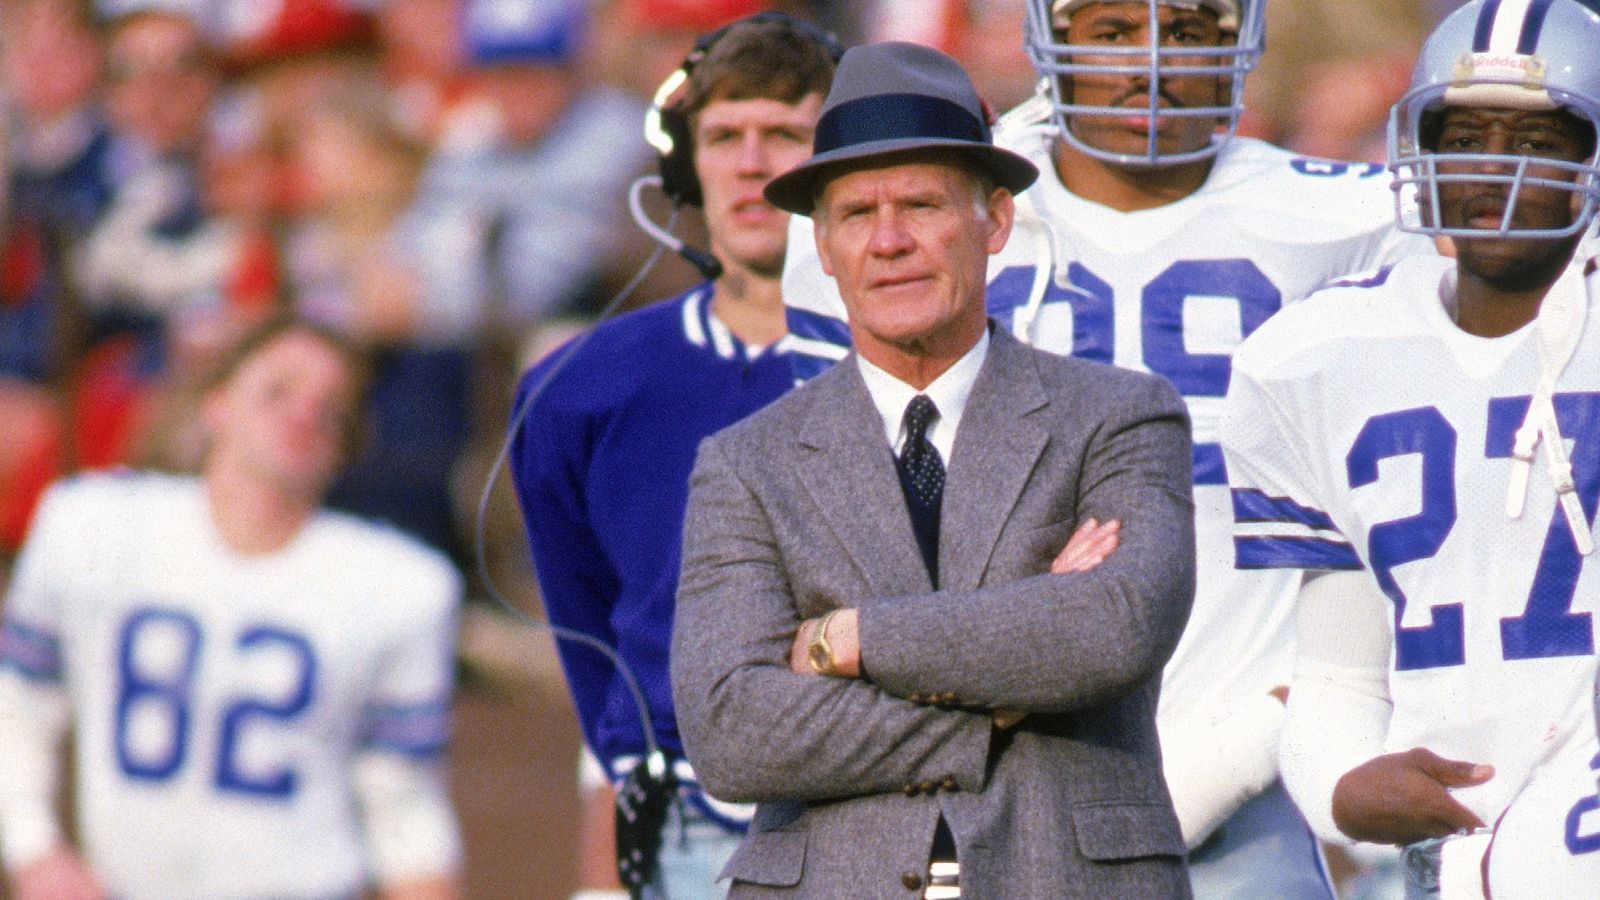 <strong>Tom Landry</strong><br>Cowboys-Besitzer Jerry Jones warf Landry nach drei Spielzeiten ohne positiven Record raus. Er war 28 Jahre im Amt, gewann zwei Super Bowls. 1988 stand das Team sogar nur 3-13. Sein Nachfolger wurde der schon bei den Dolphins erwähnte Jimmy Johnson. 1989 stand Dallas sogar bei 1-15 und war noch schlechter, ehe die Franchise drei Jahre später mit Coach Johnson den Super Bowl gewann.